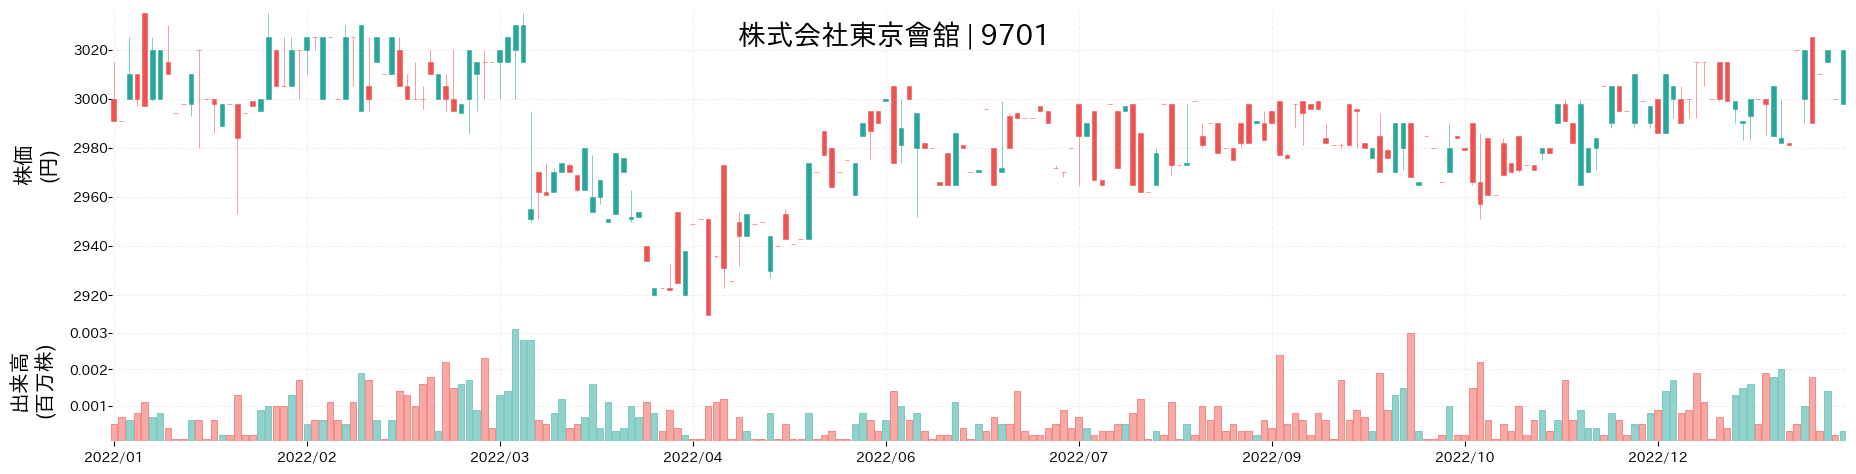 東京會舘の株価推移(2022)